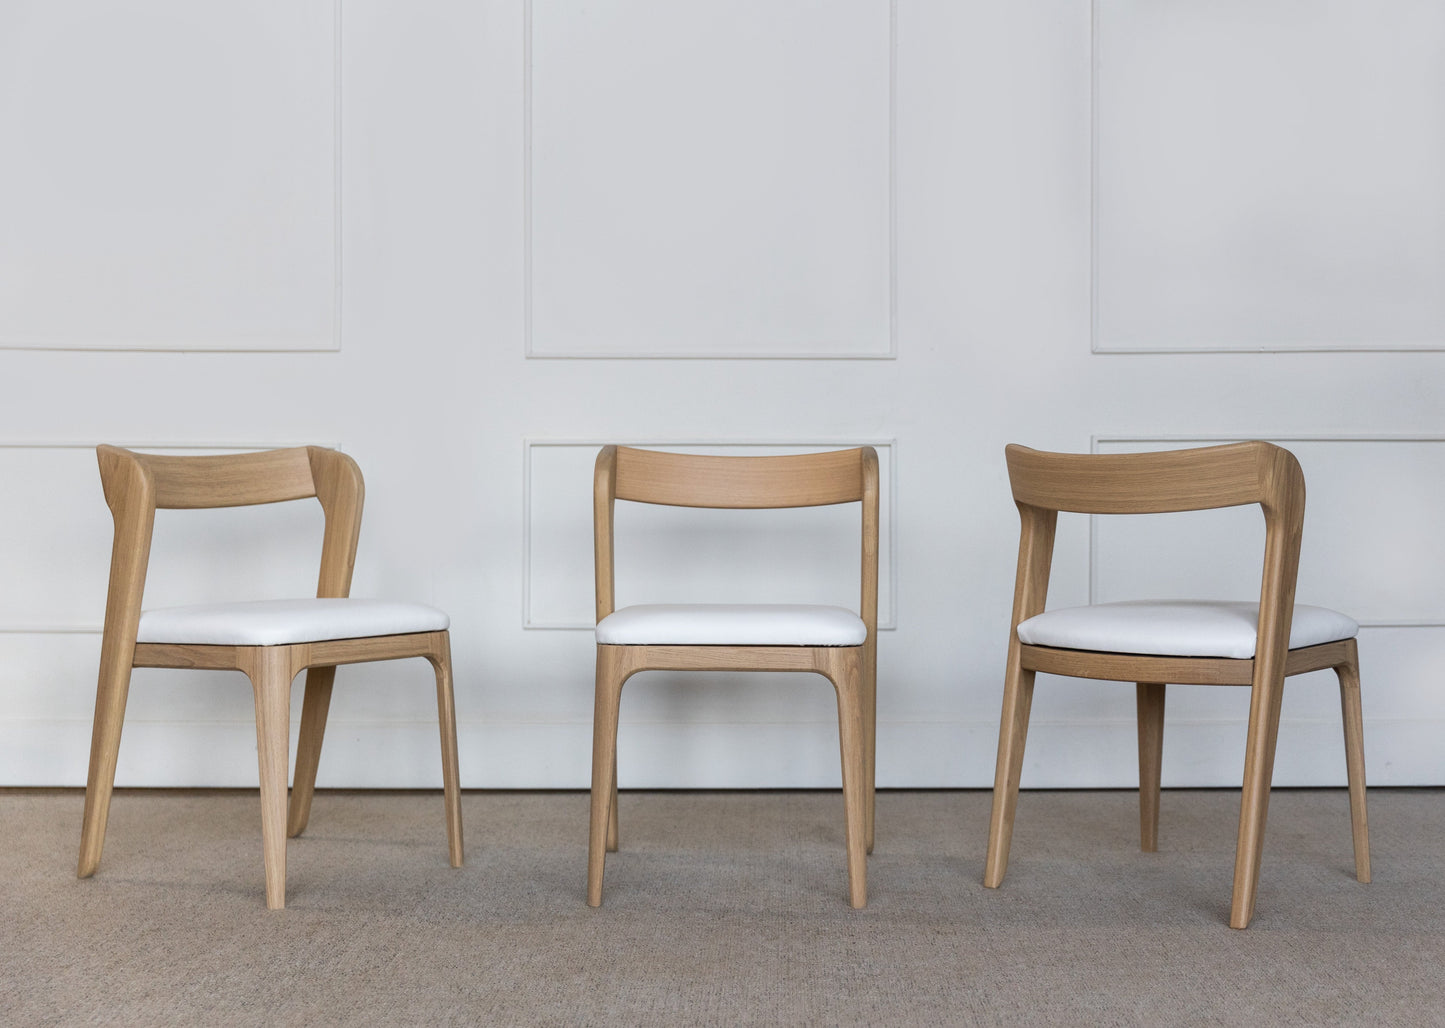 Spisegruppen Lervik består av ett rundt spisebord (Lofoten) og seks stoler (Vera). Bord og stoler er laget i heltre eik. Sitte delen er laget av naturlig skinn.